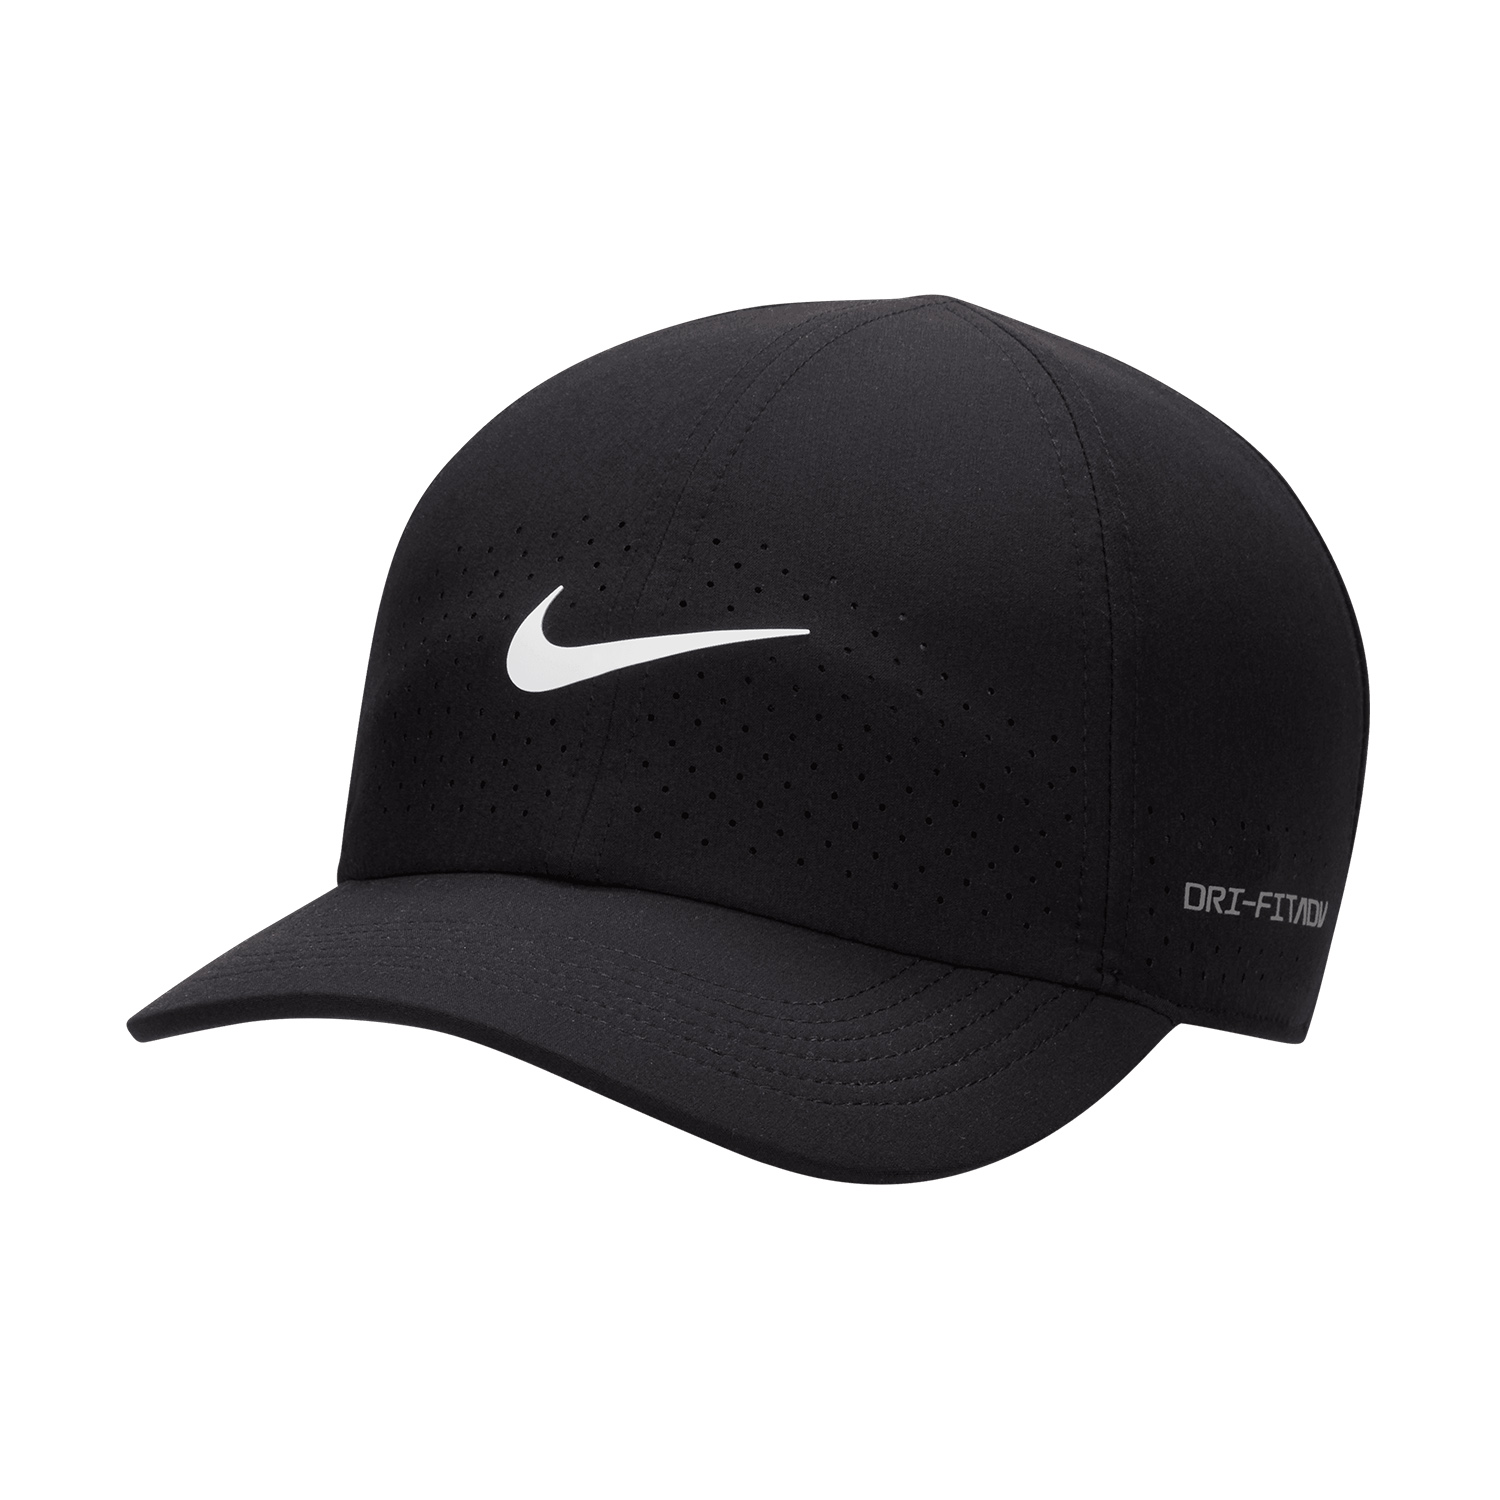 Nike Dri-FIT ADV Club Tennis Cap - Black/White